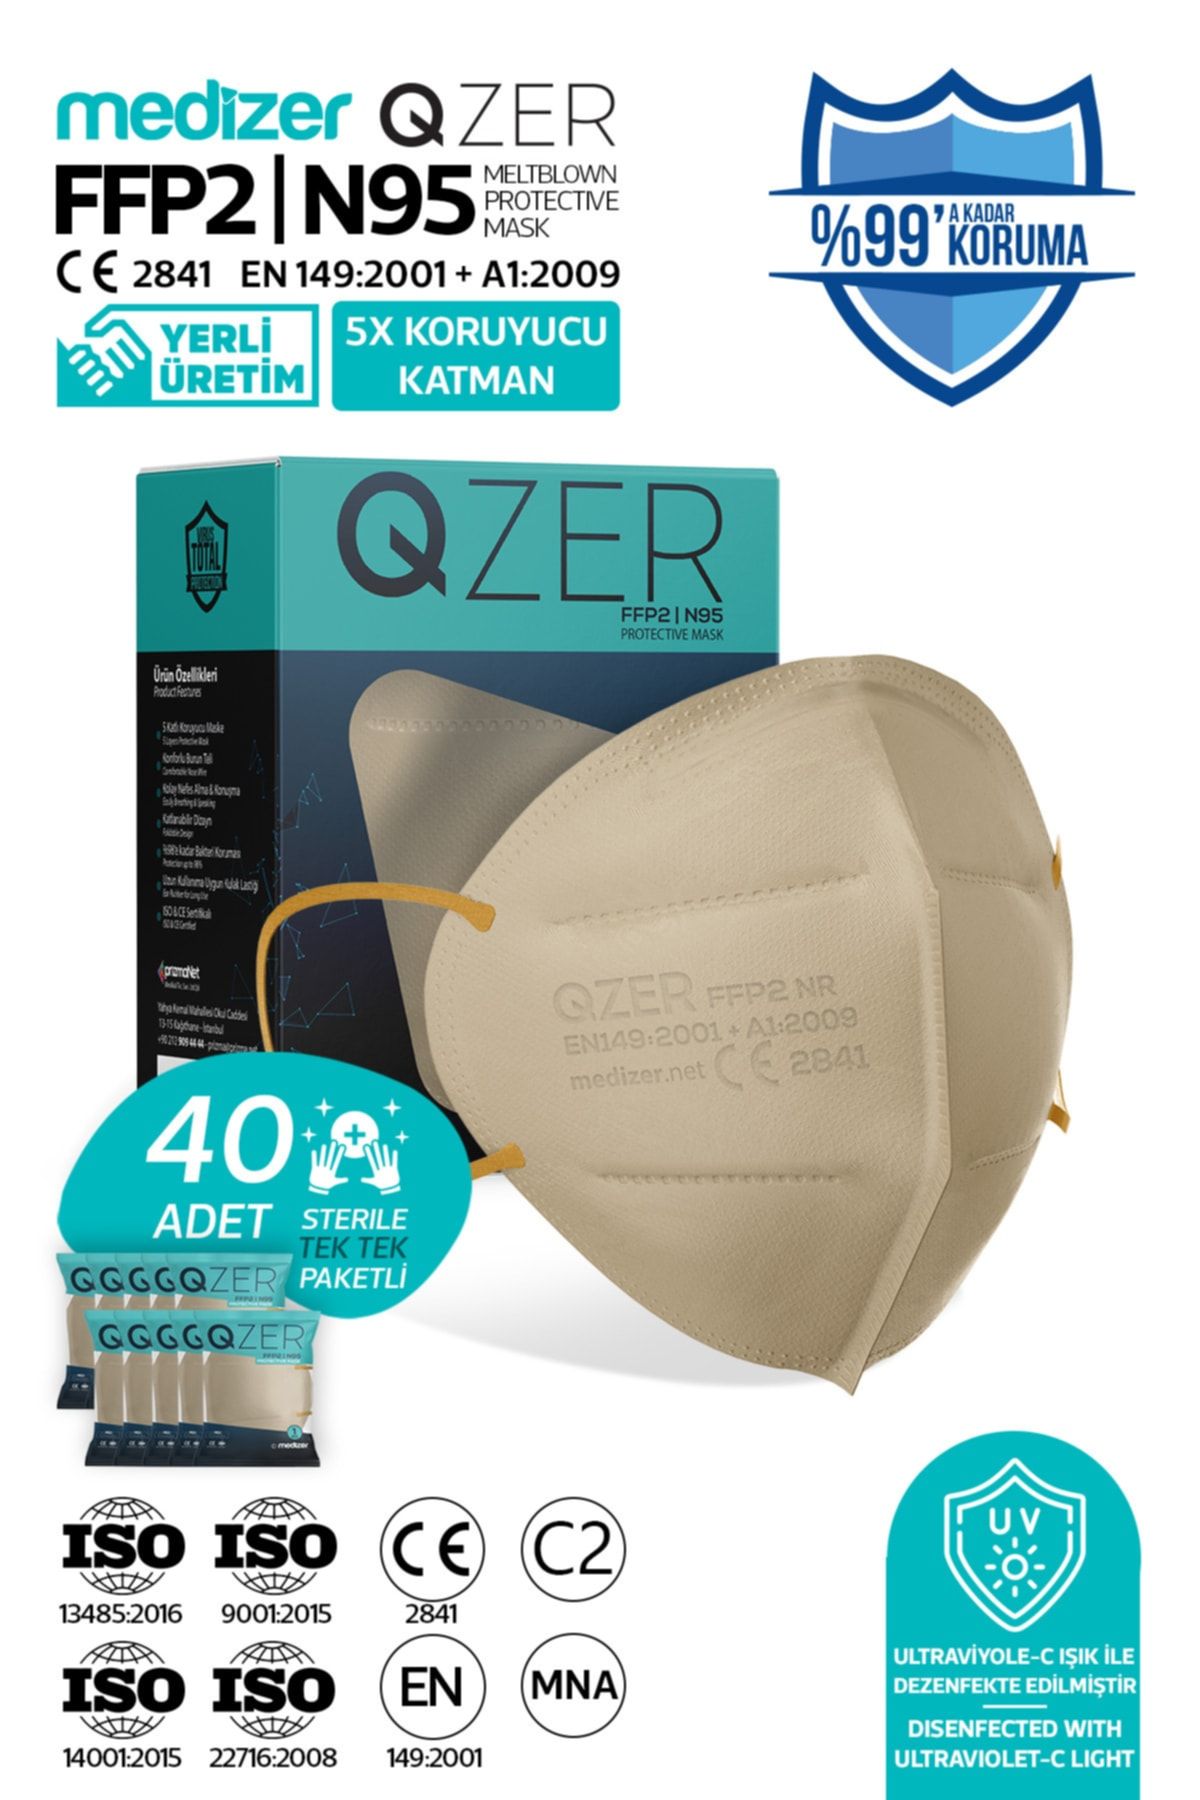 Medizer Qzer 40 Adet Krem Renk 5 Katmanlı N95 Maske